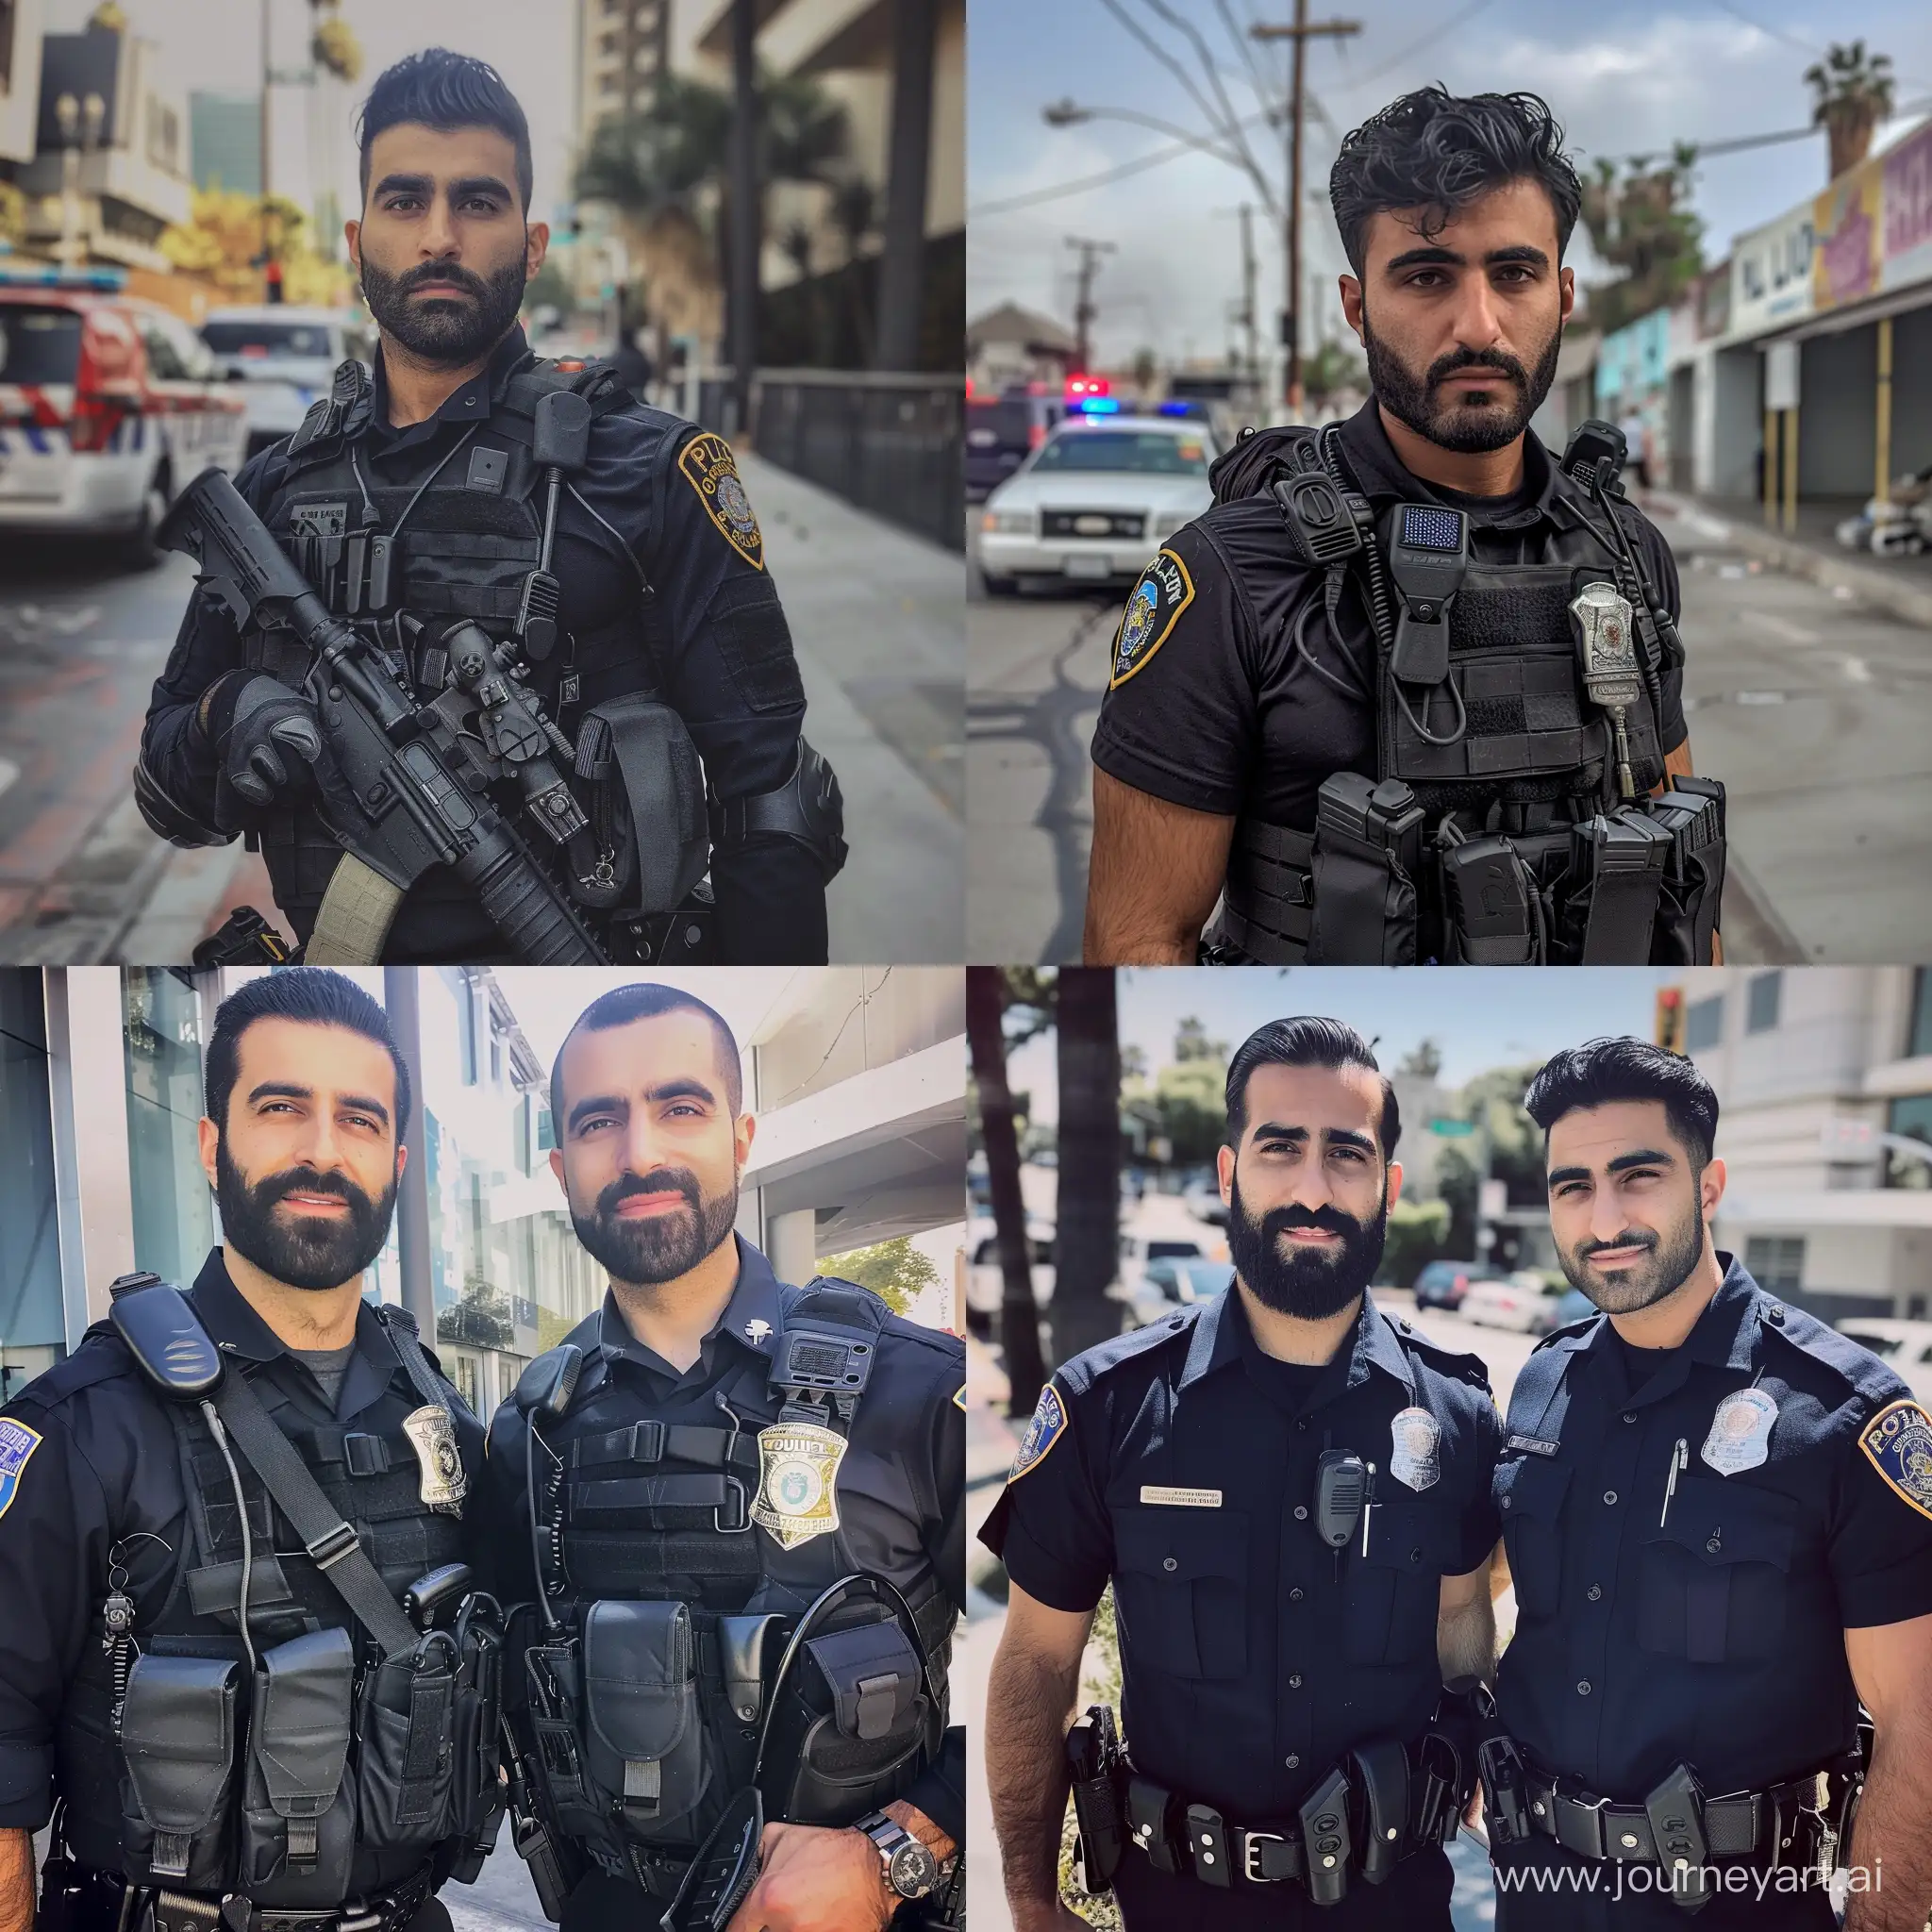 Иранские парни работают в полиции Лос-Анджелеса